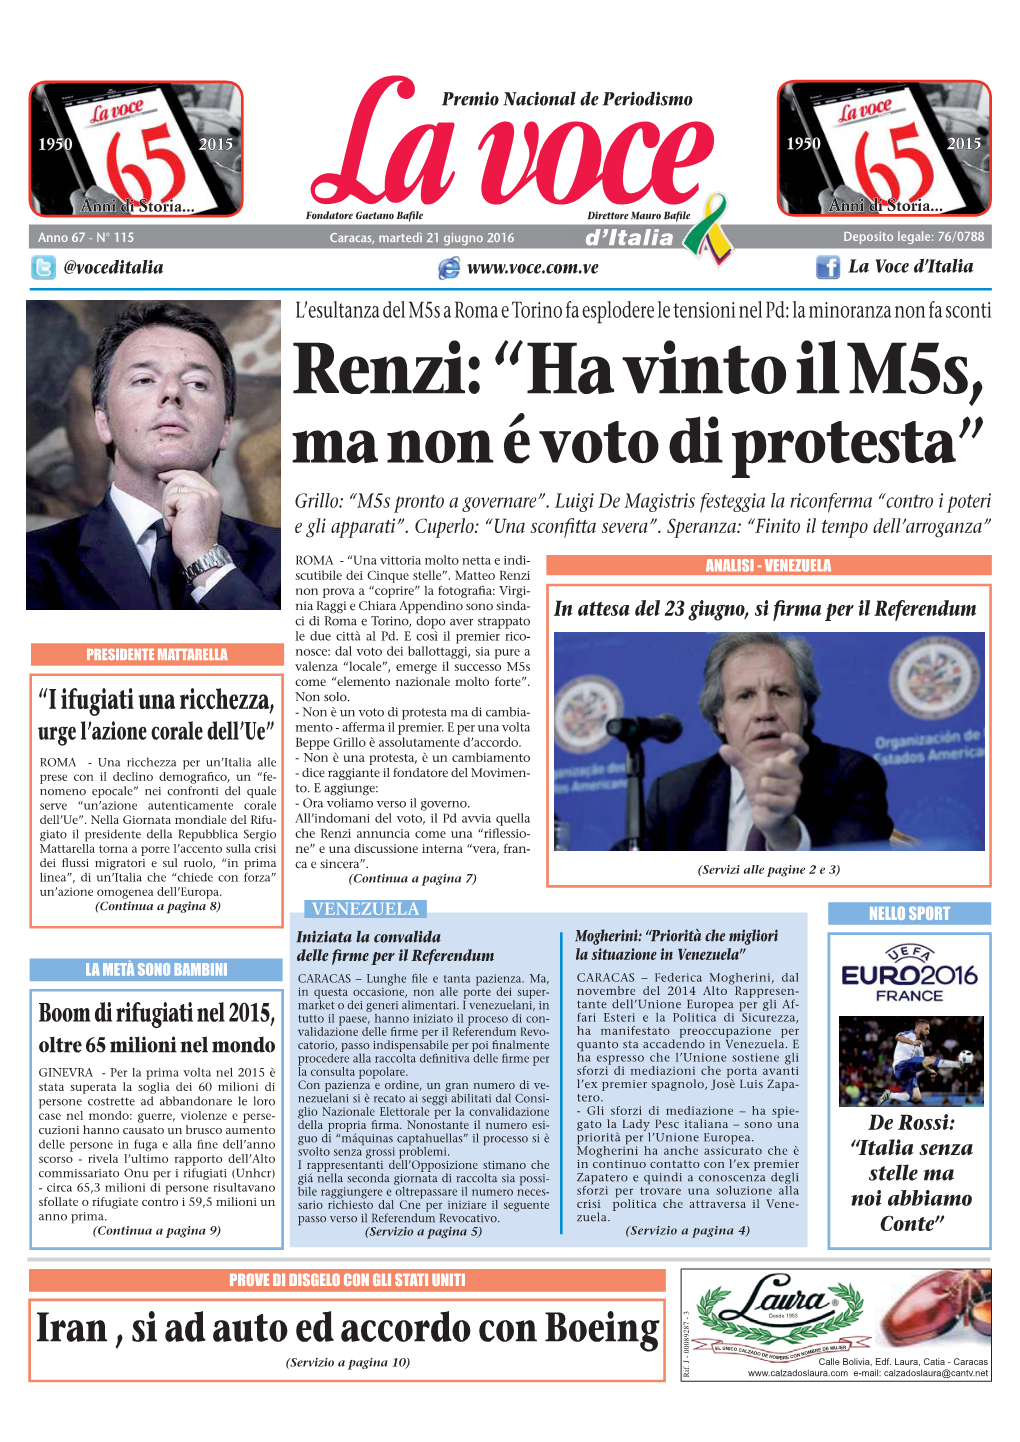 Renzi: “Ha Vinto Il M5s, Ma Non É Voto Di Protesta” Grillo: “M5s Pronto a Governare”